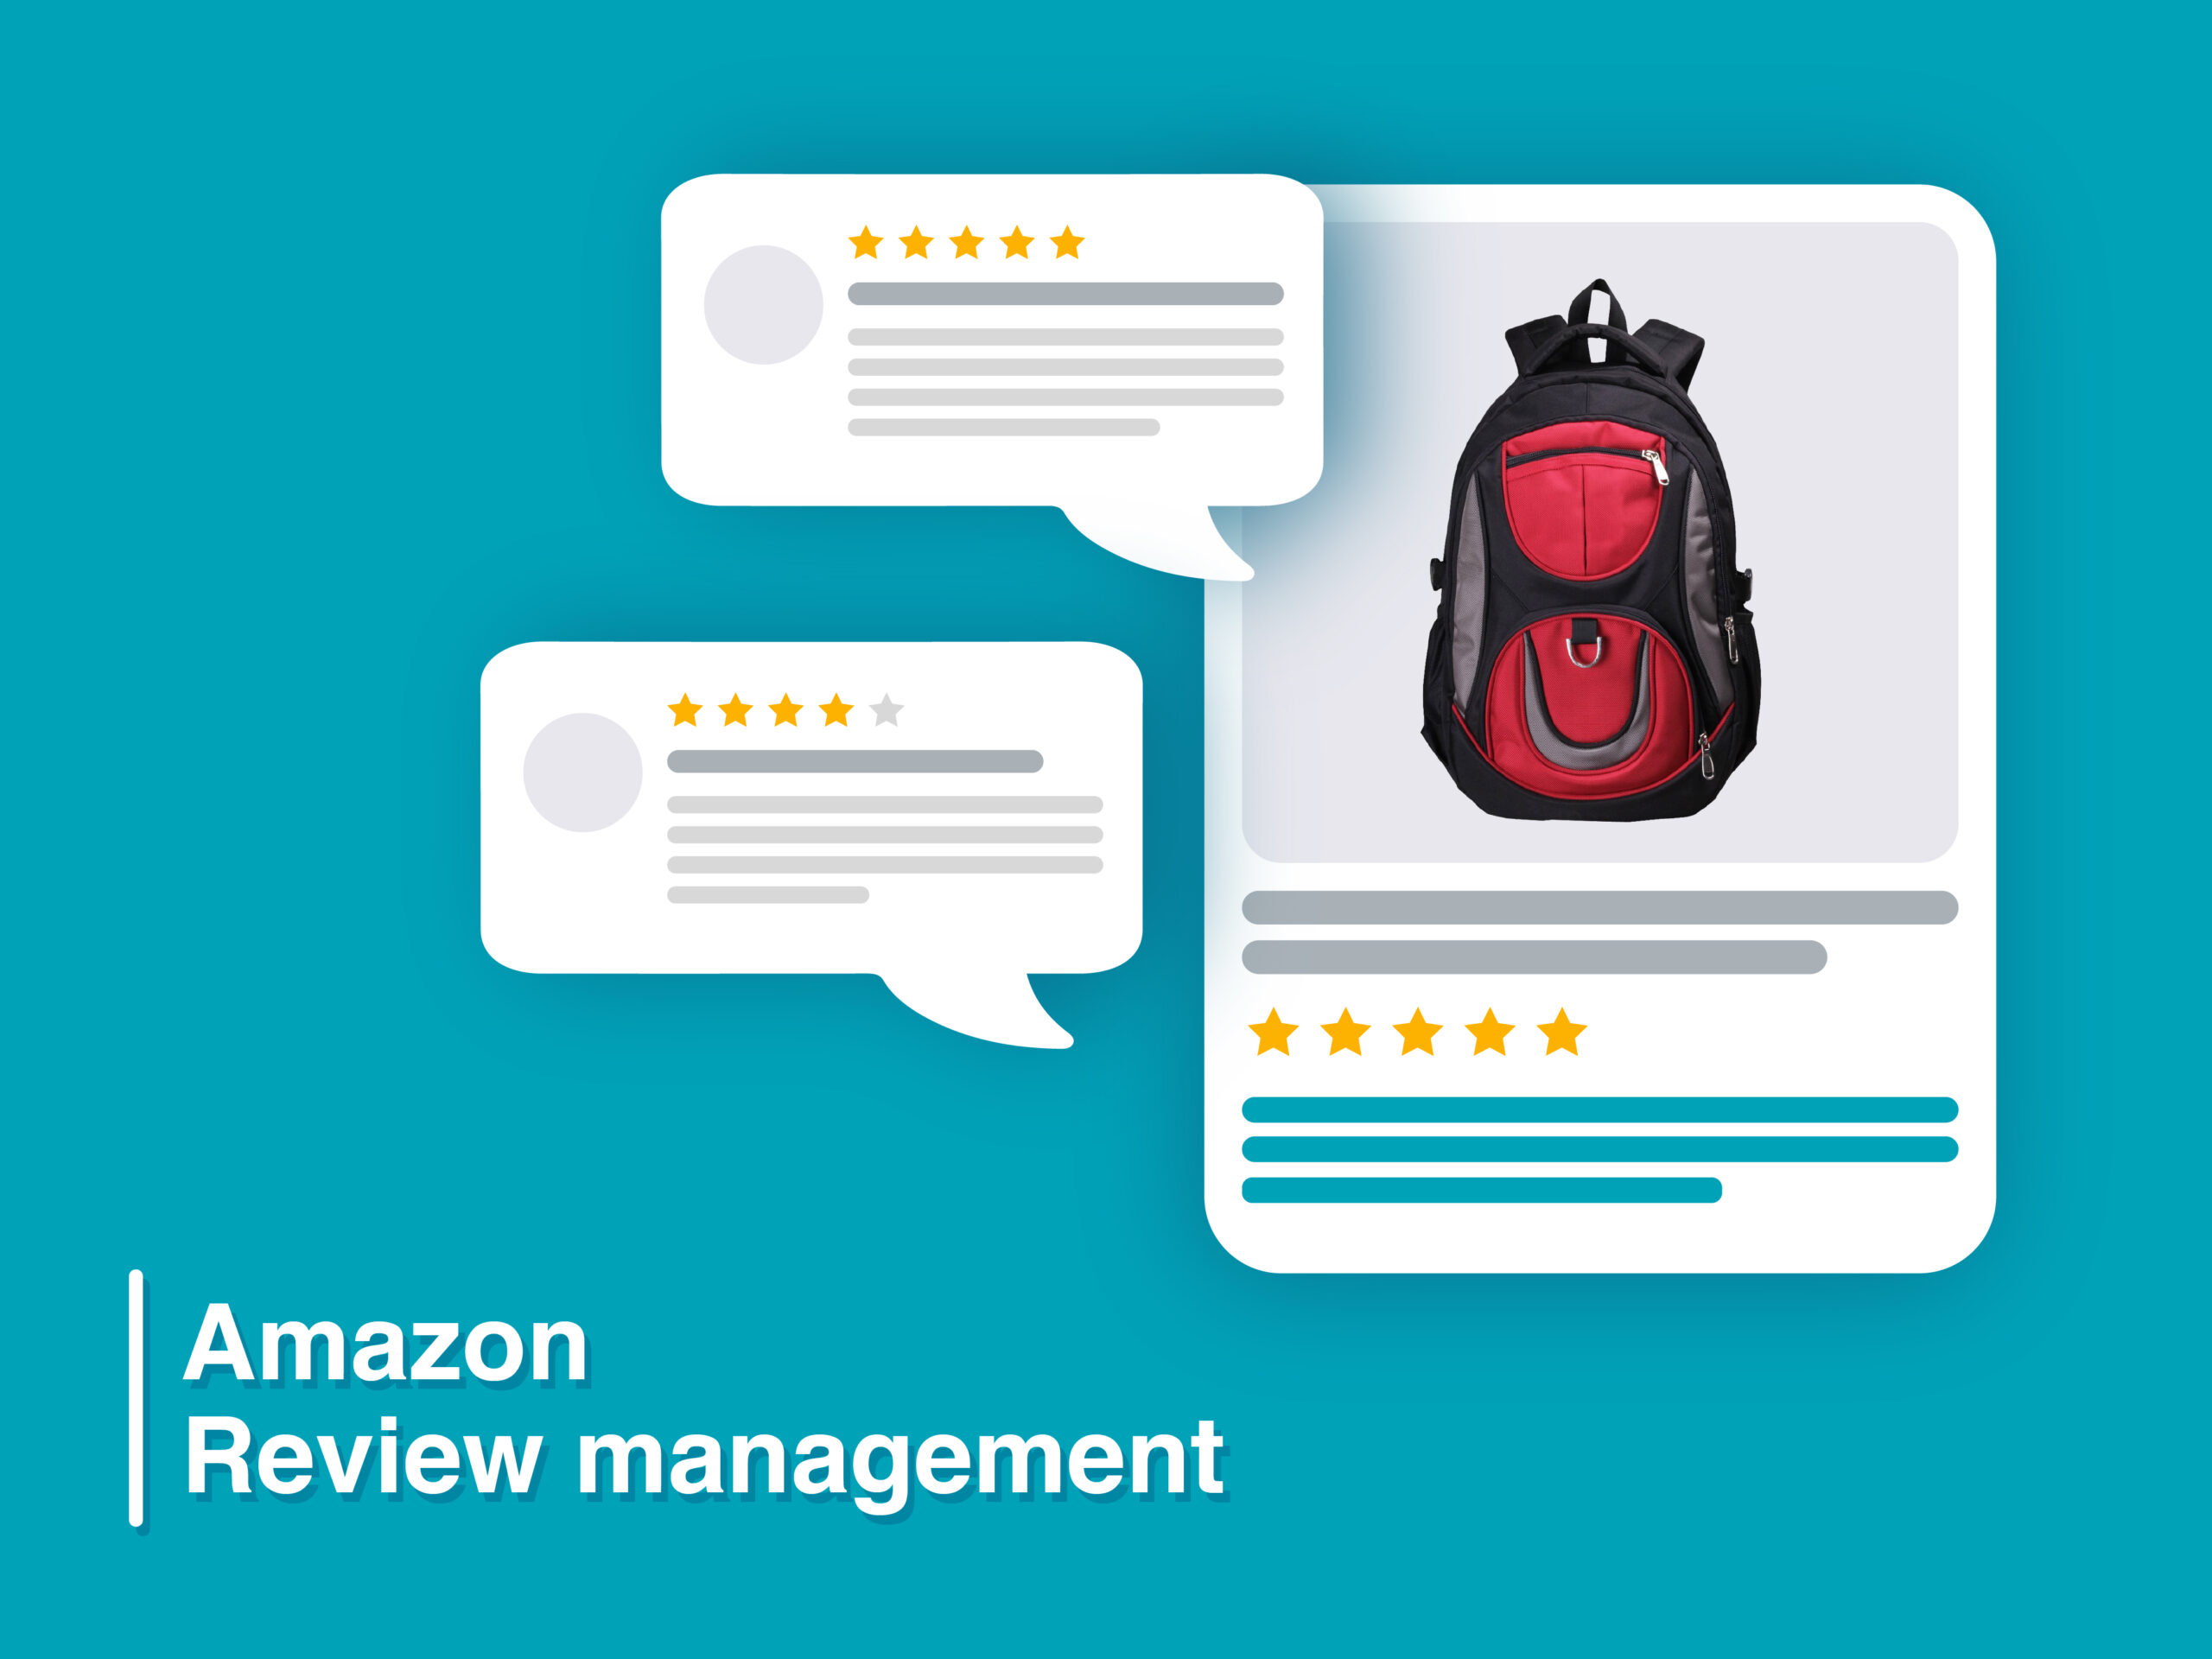 Amazon review management service